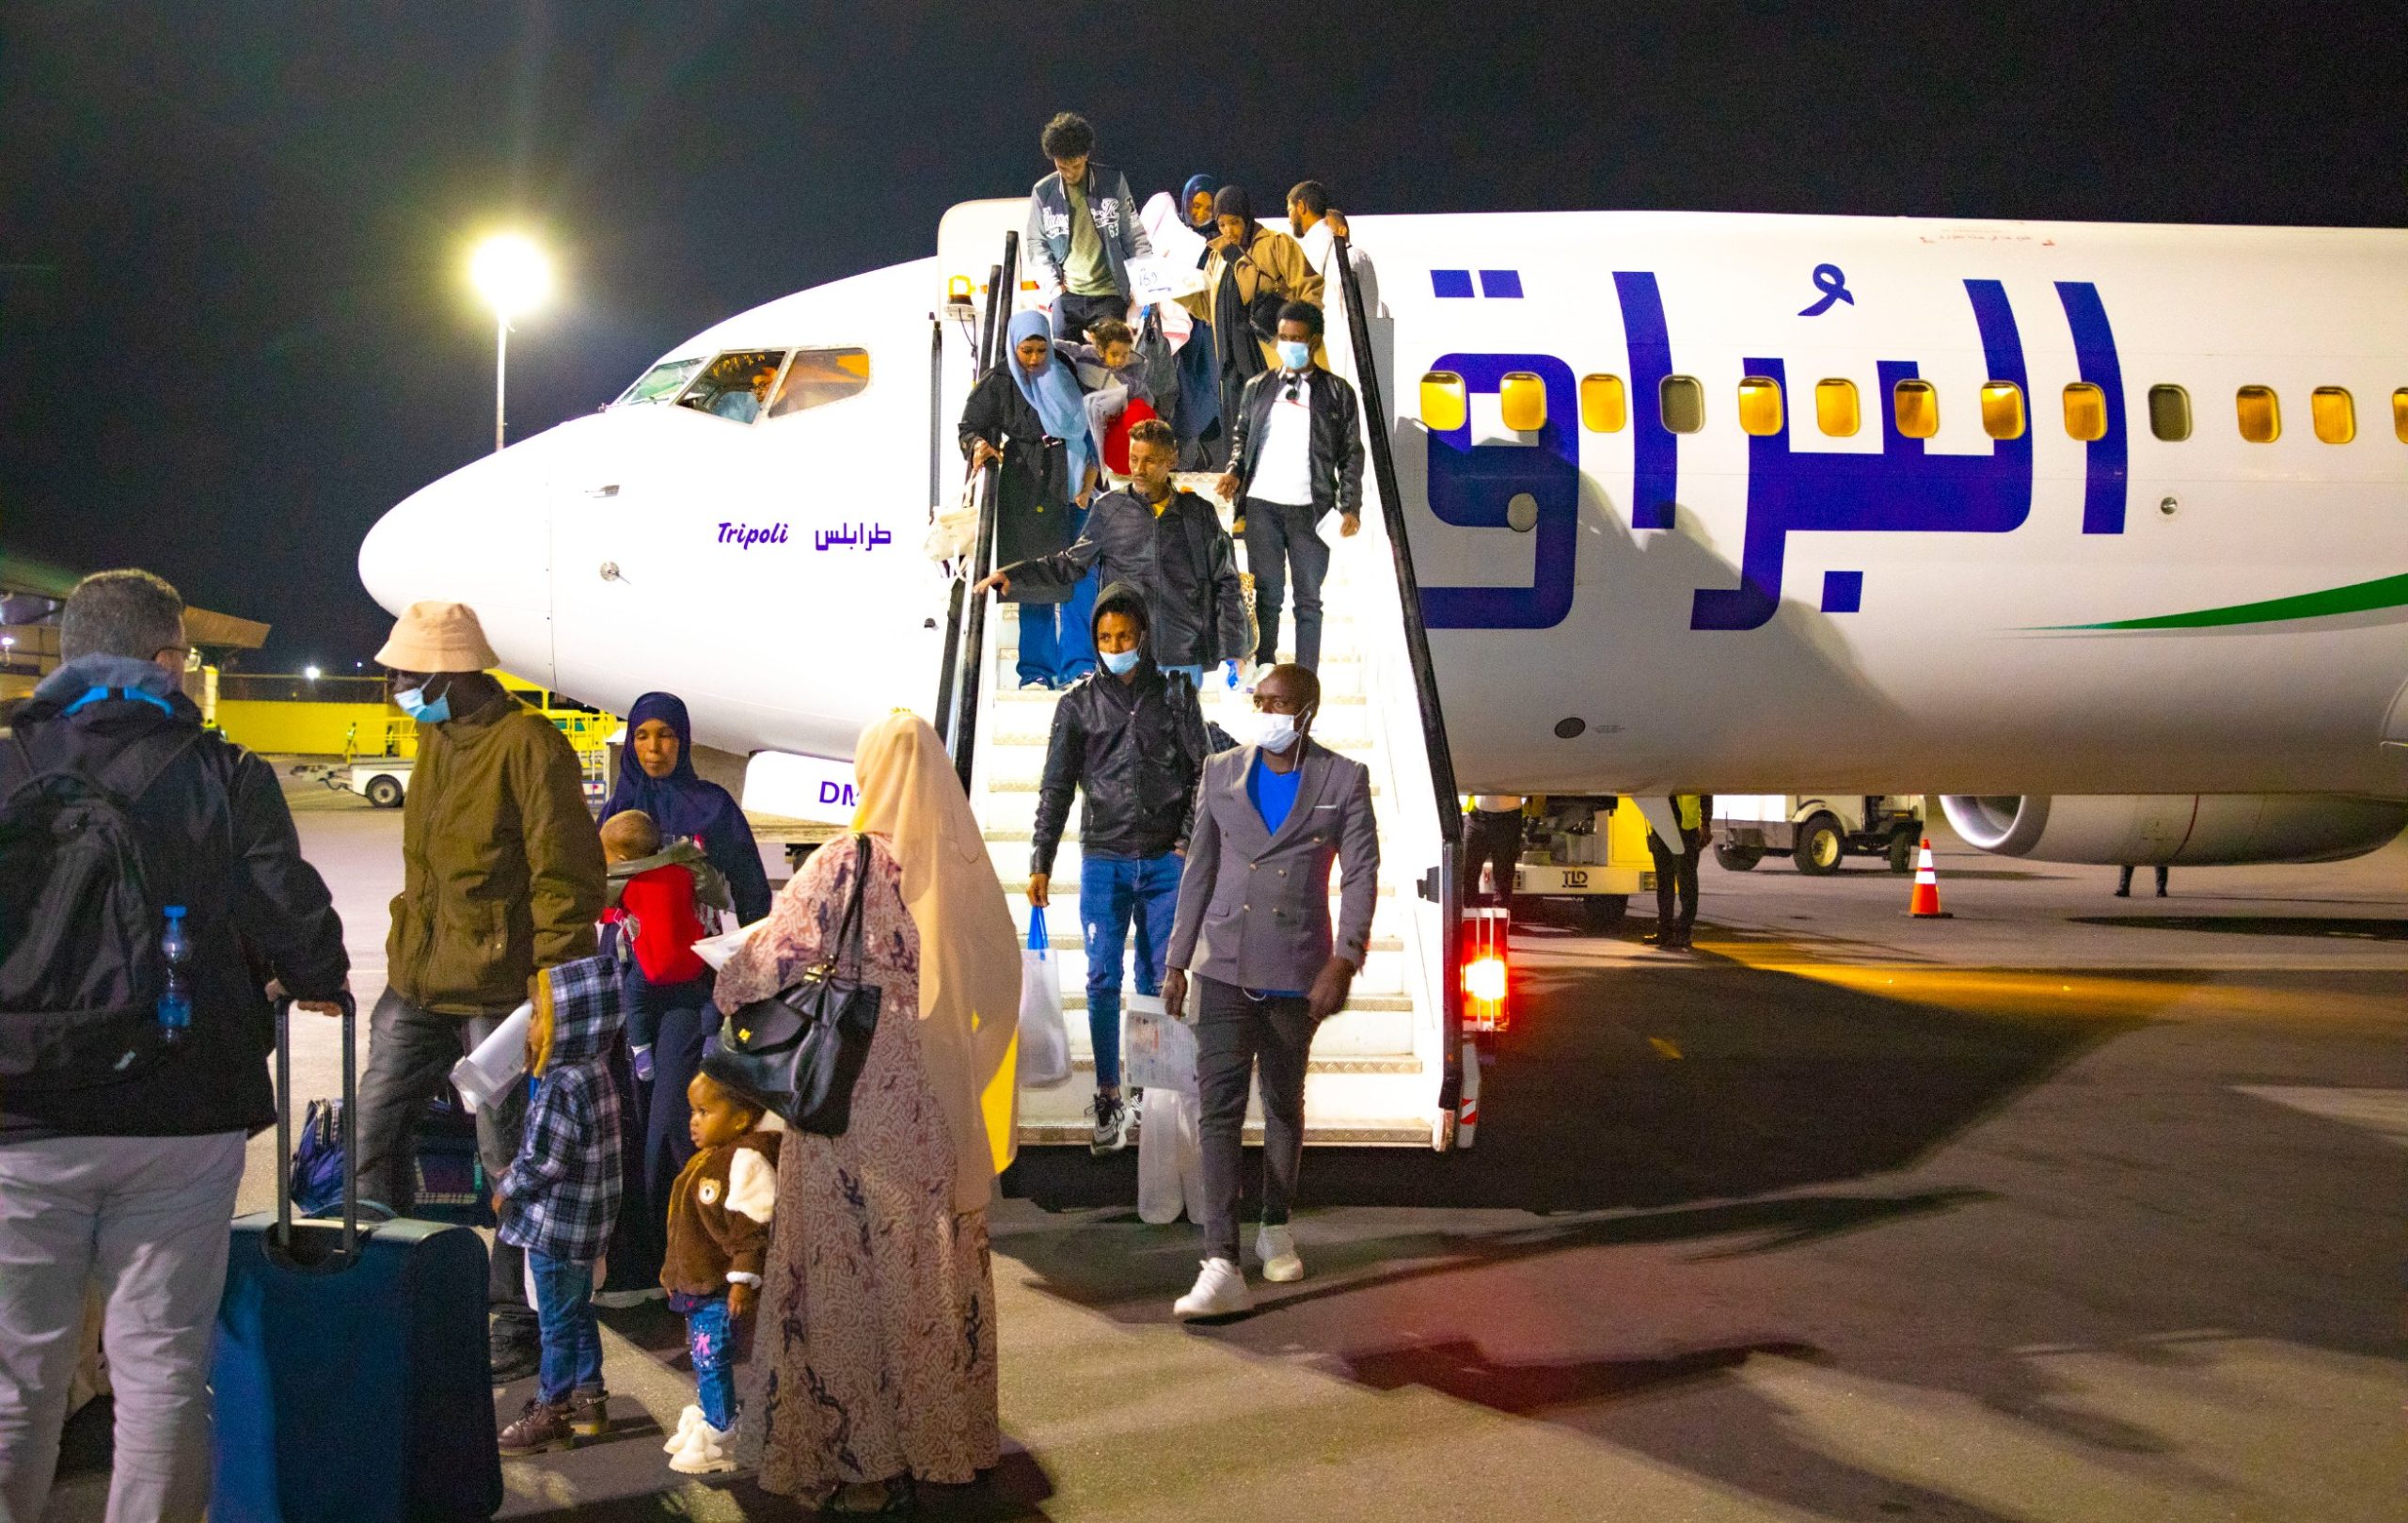 Rwanda welcomed 169 asylum seekers